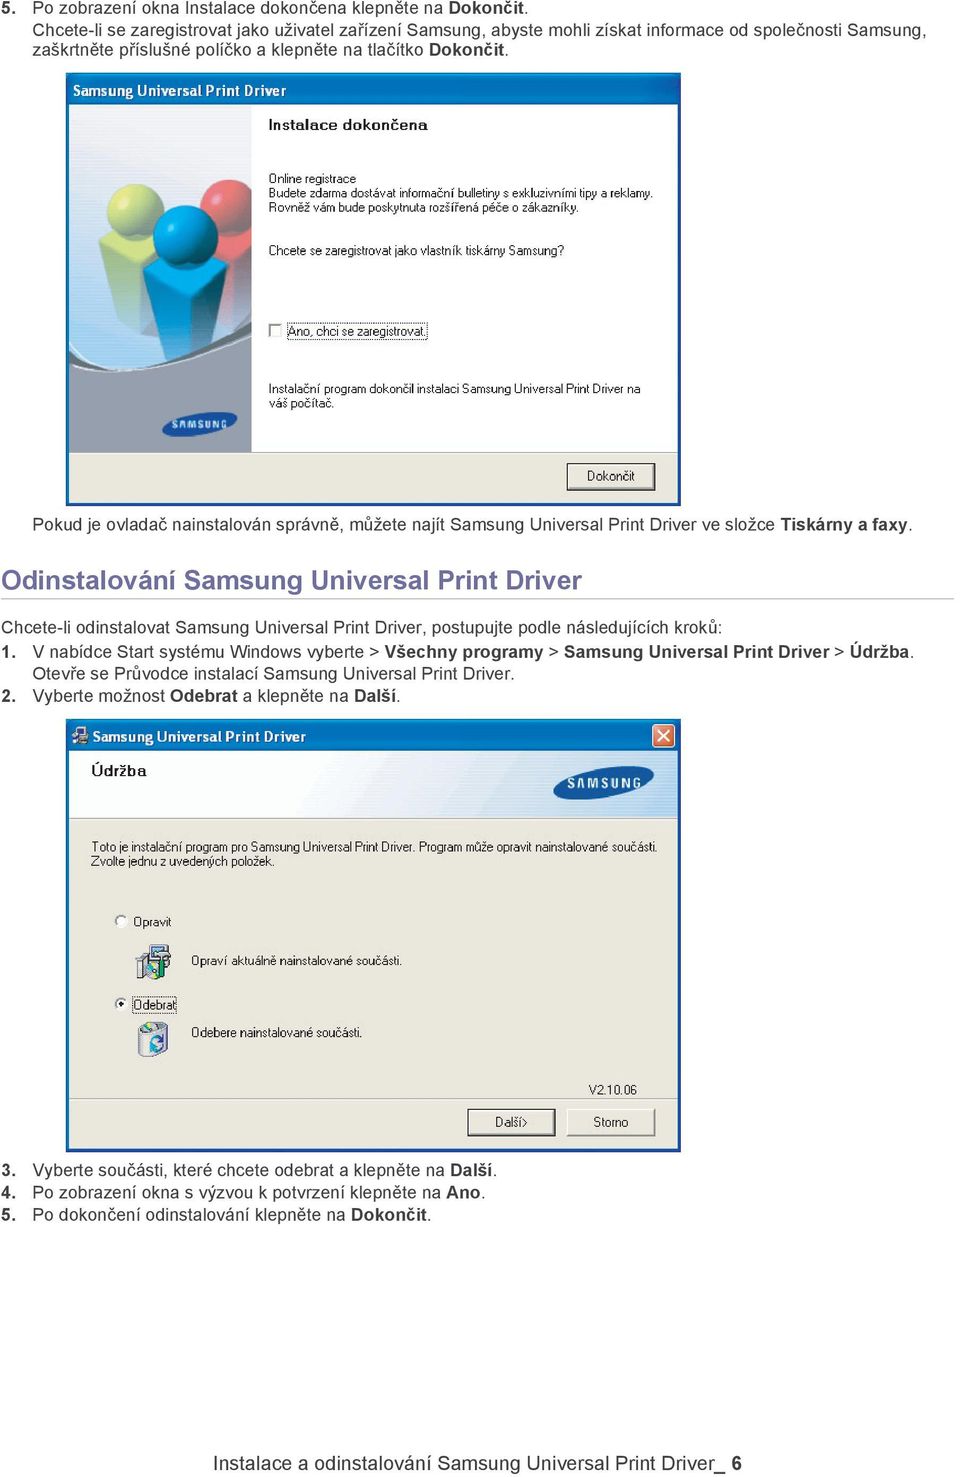 Pokud je ovladač nainstalován správně, můžete najít Samsung Universal Print Driver ve složce Tiskárny a faxy.